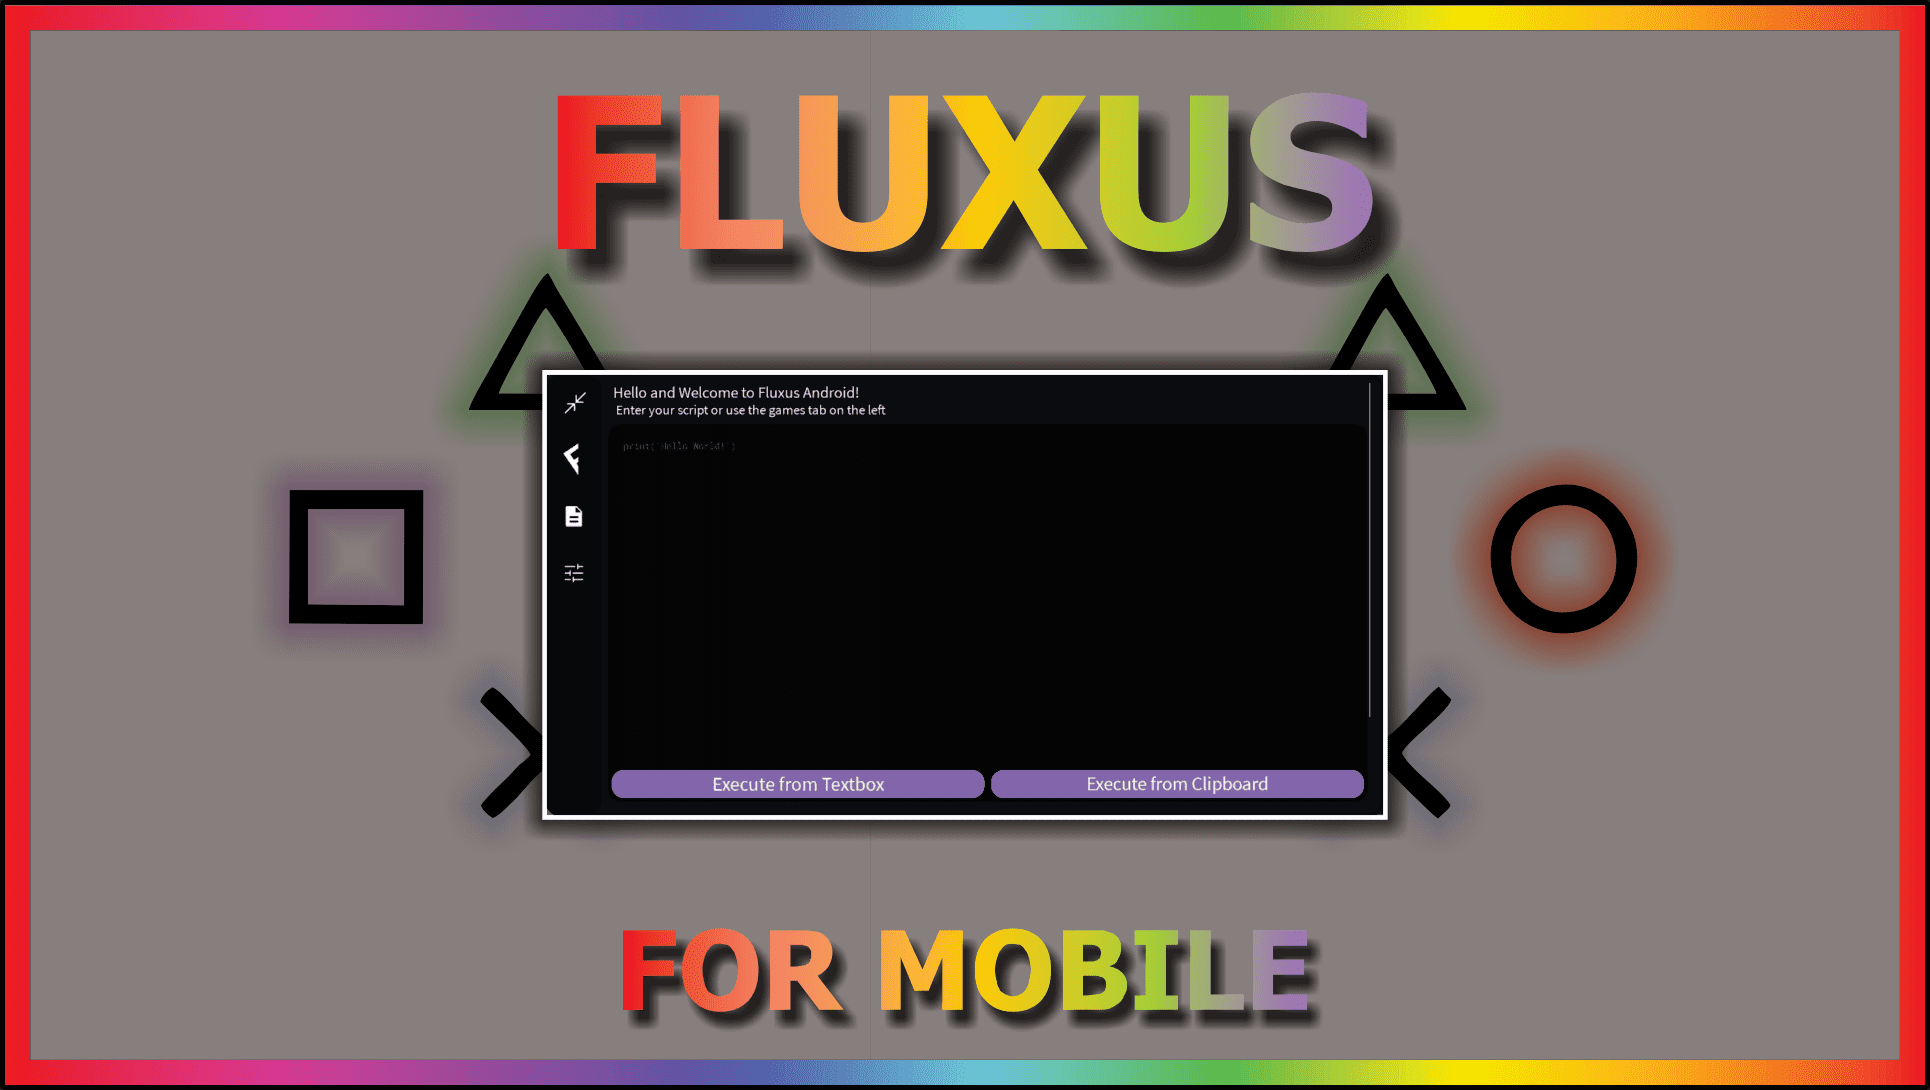 Fluxus Executor Download 2023